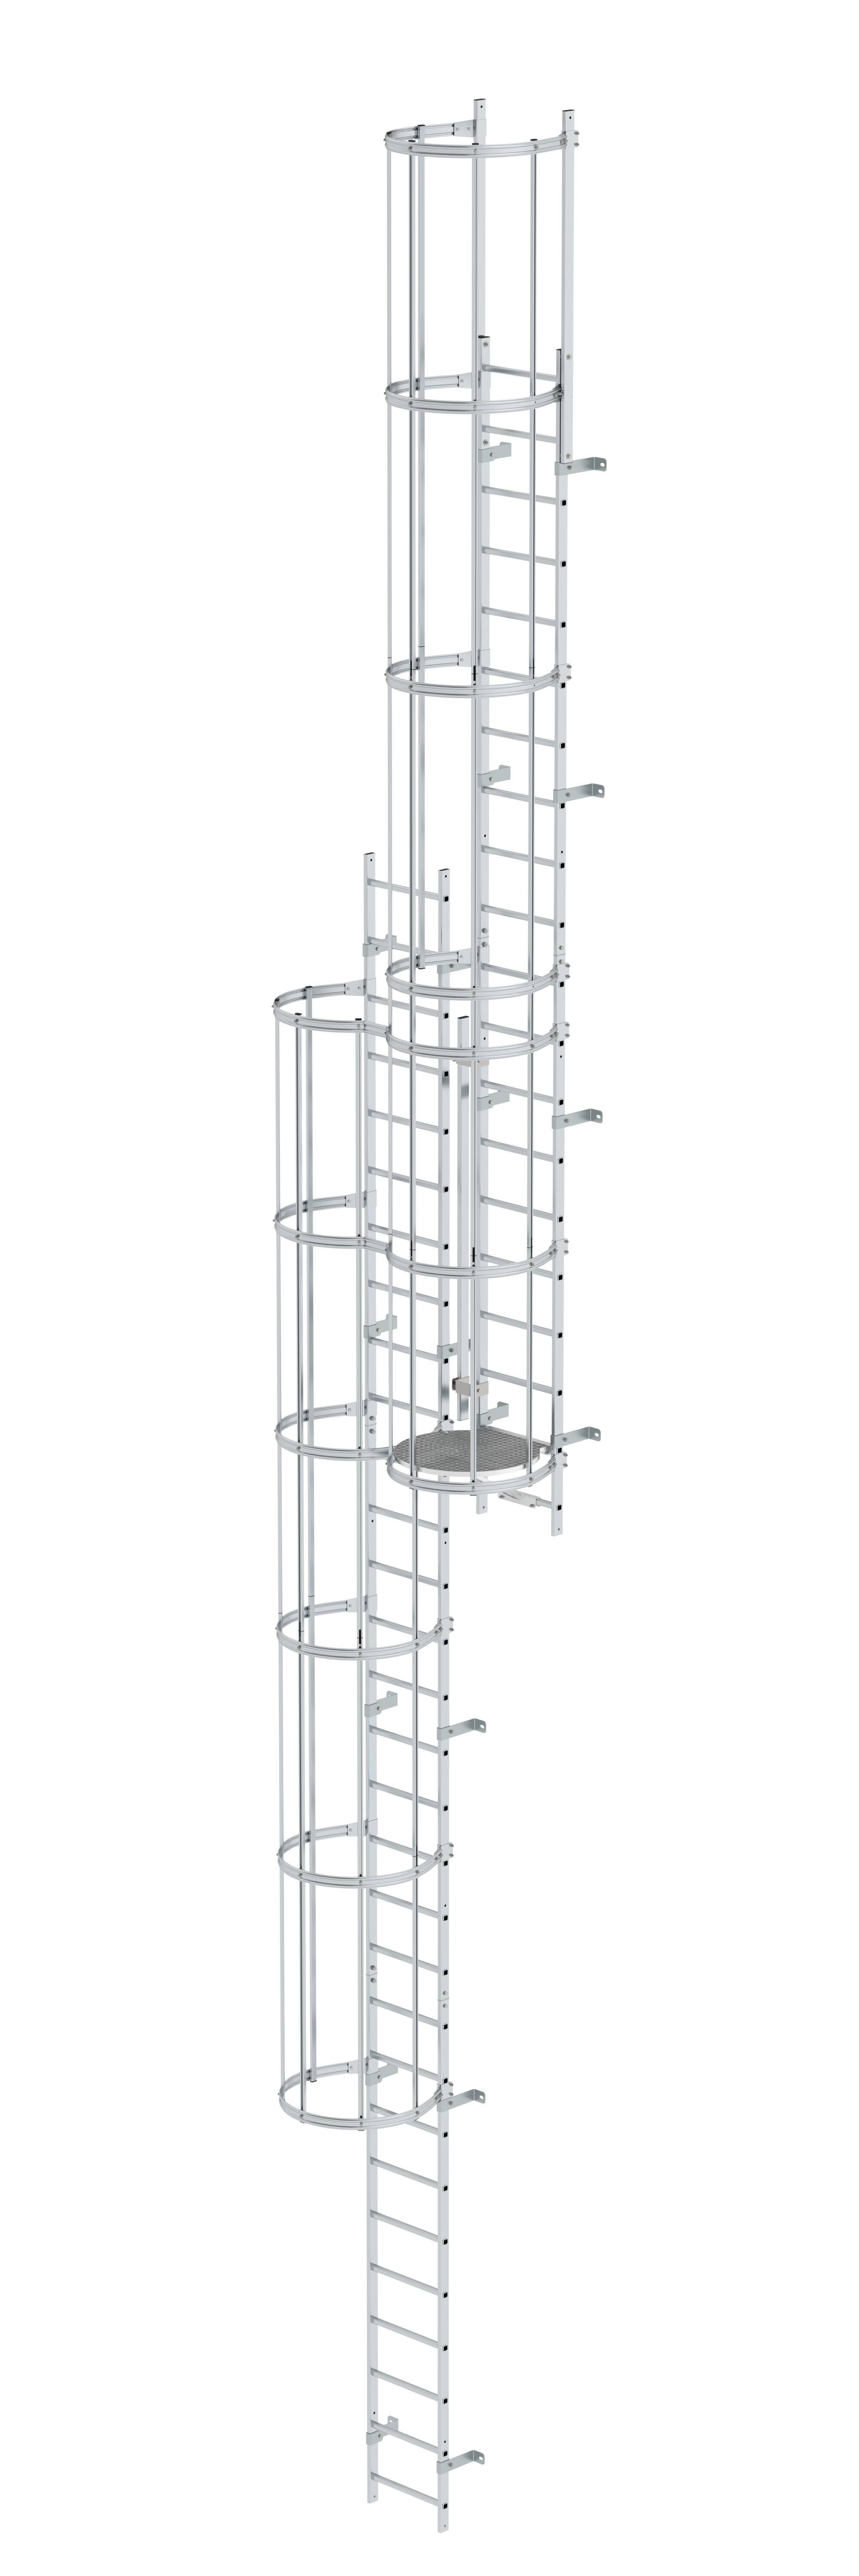 Mehrzügige Steigleiter mit Rückenschutz (Maschinen) Aluminium blank 12,12m